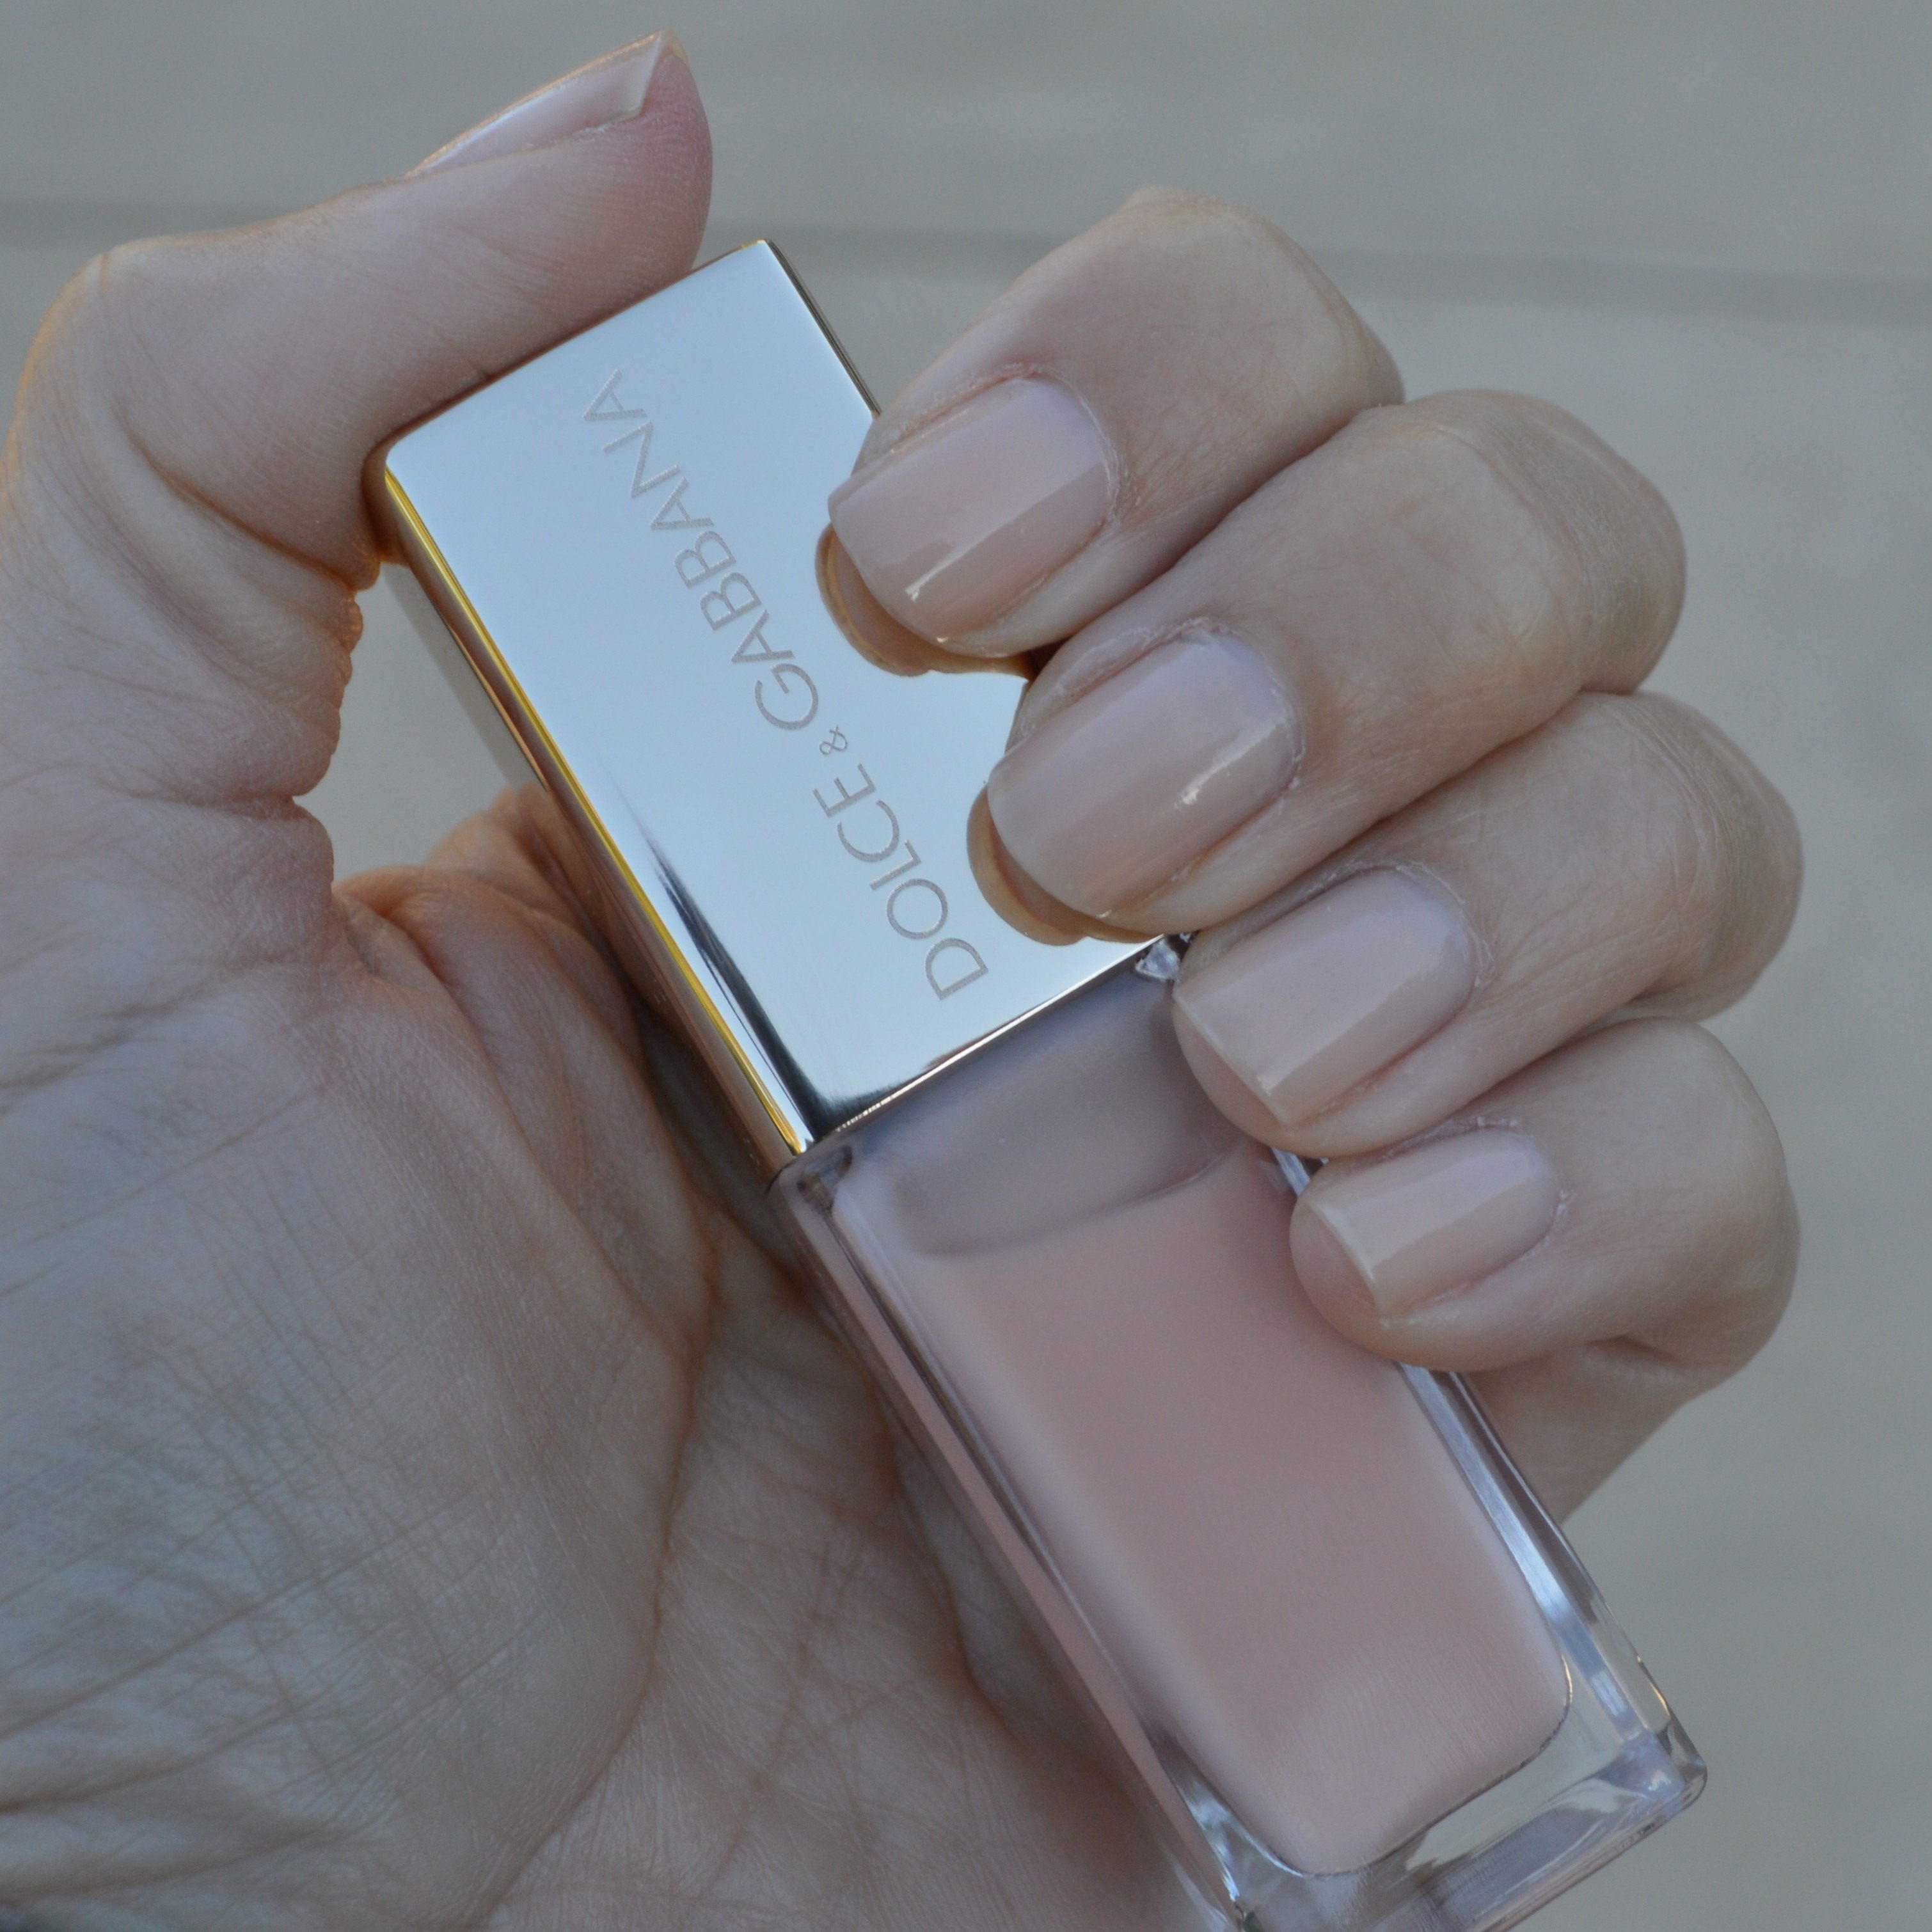 Dolce & Gabbana Nude nail polish review – Bay Area Fashionista